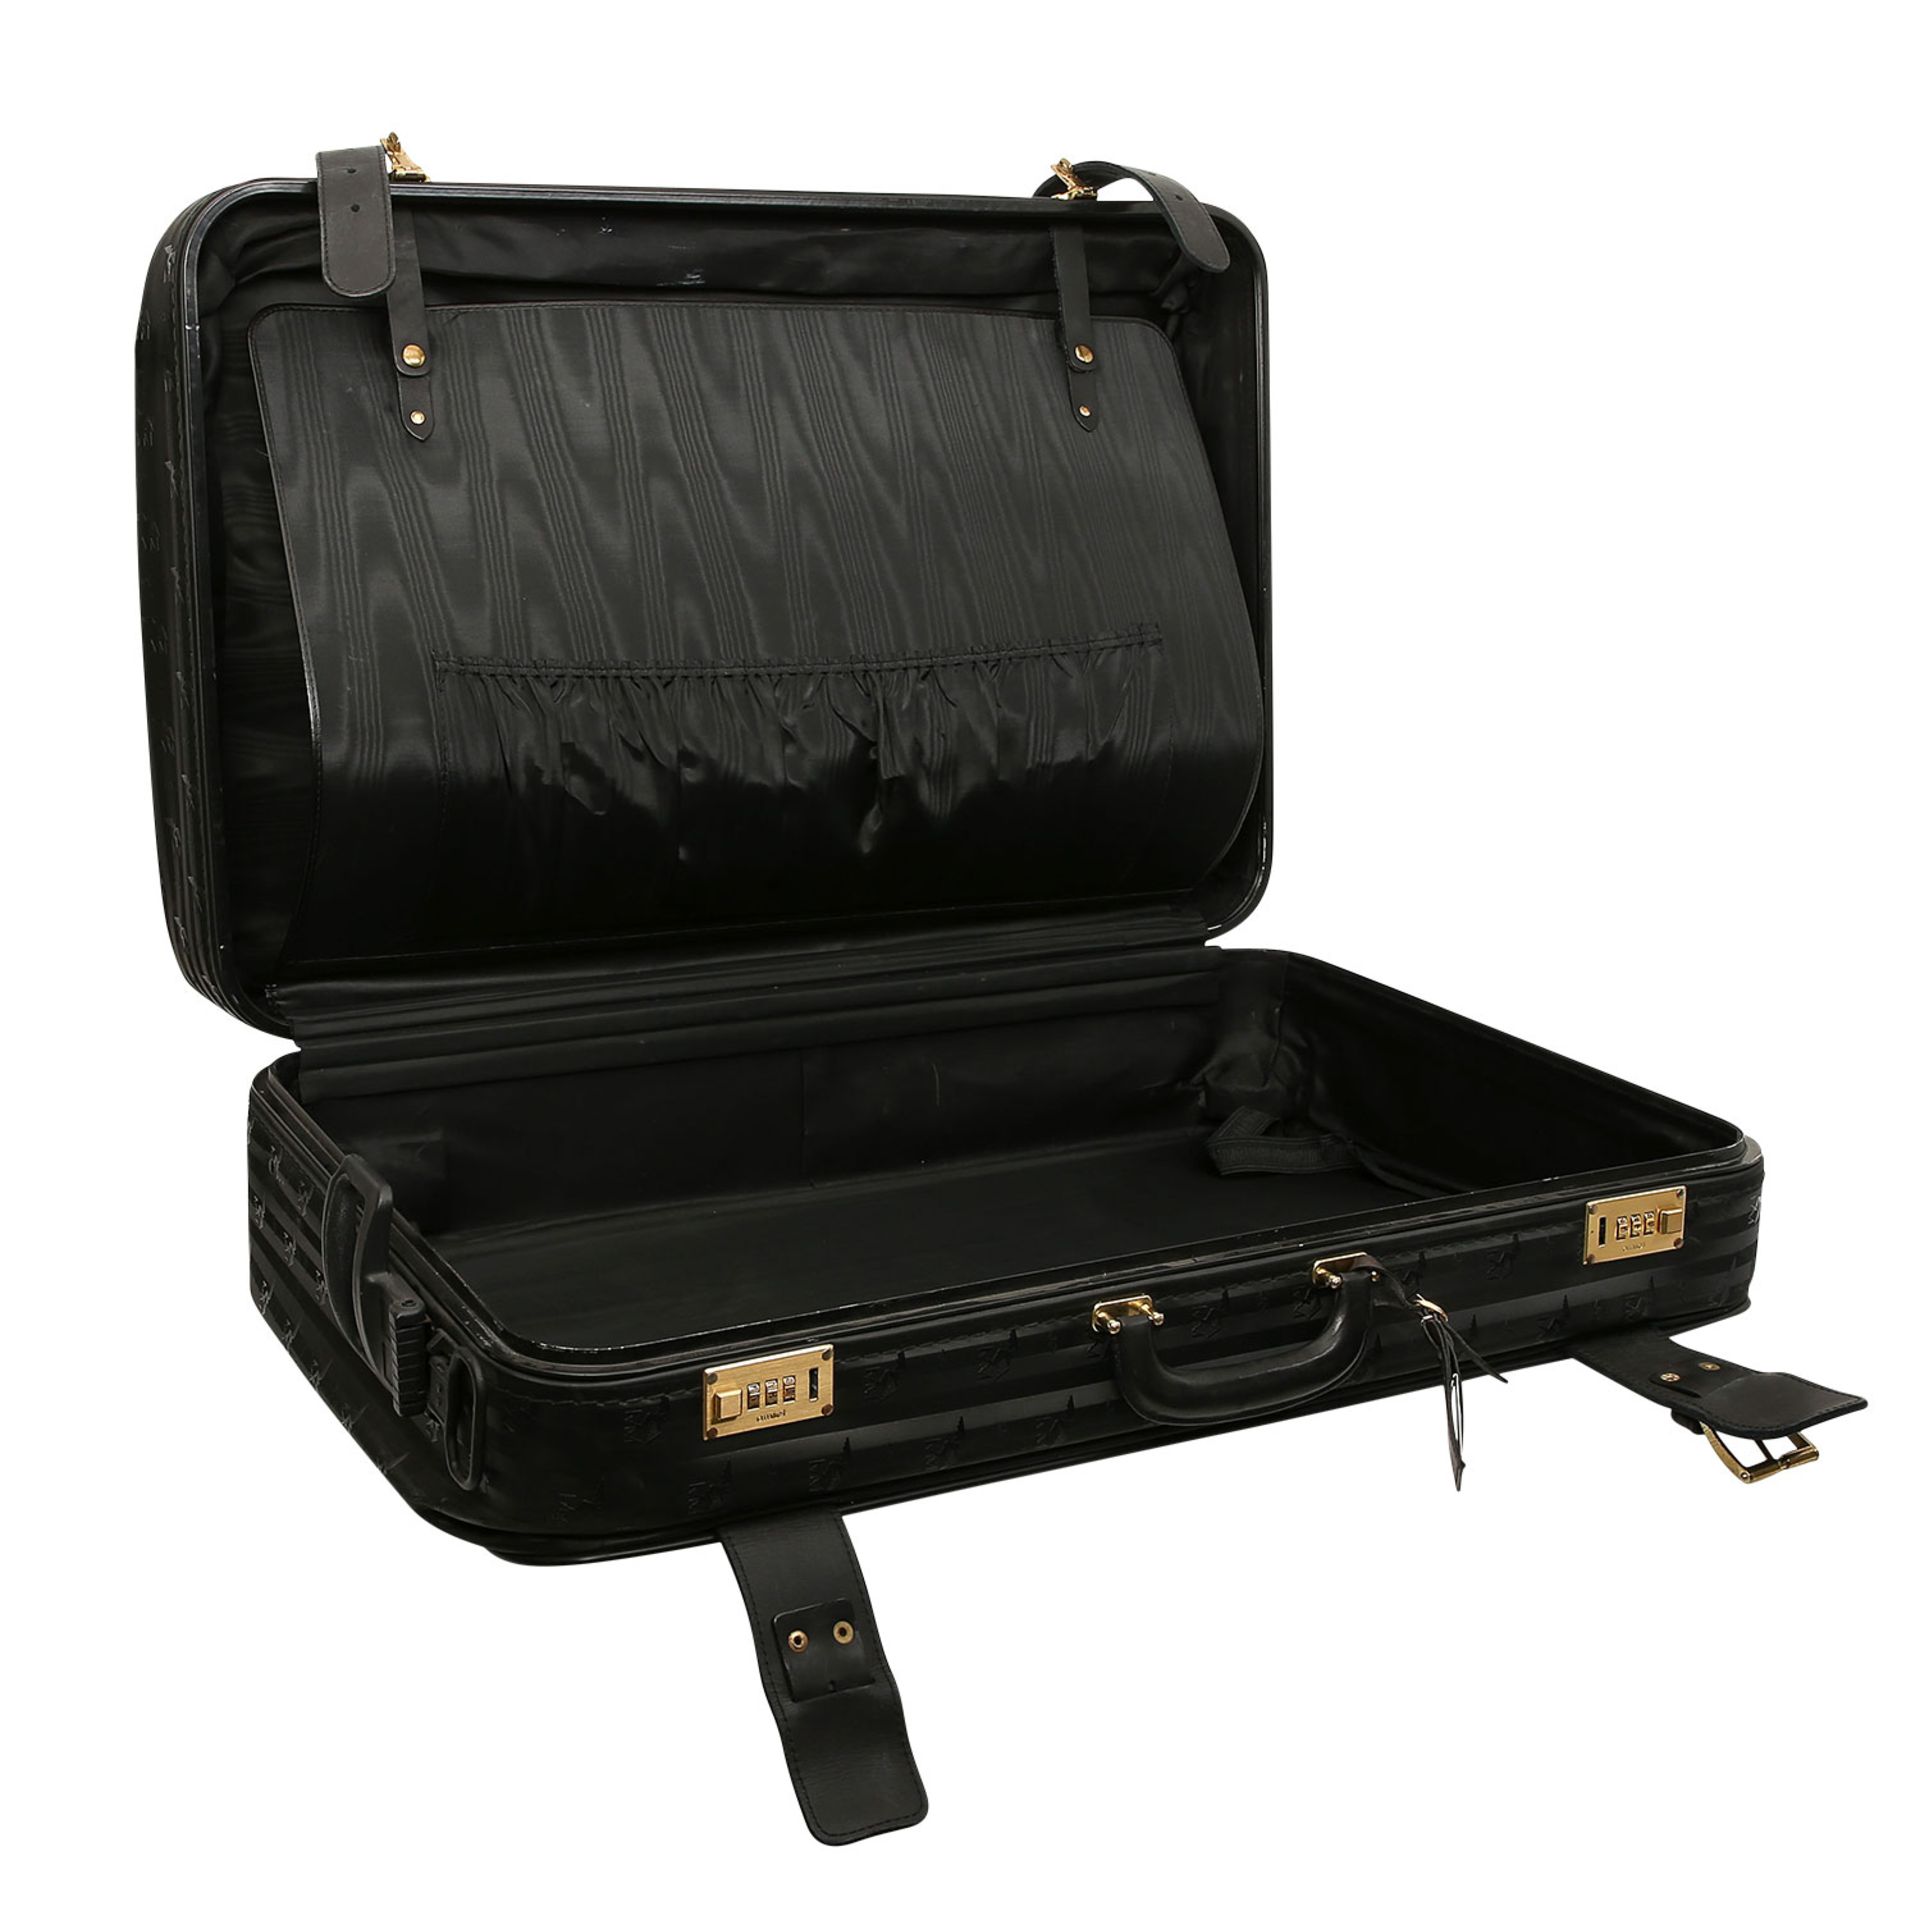 MAISON MOLLERUS VINTAGE Koffer.Synthetik in Schwarz mit Logo-Struktur und goldfarbener Hardware, - Bild 6 aus 6